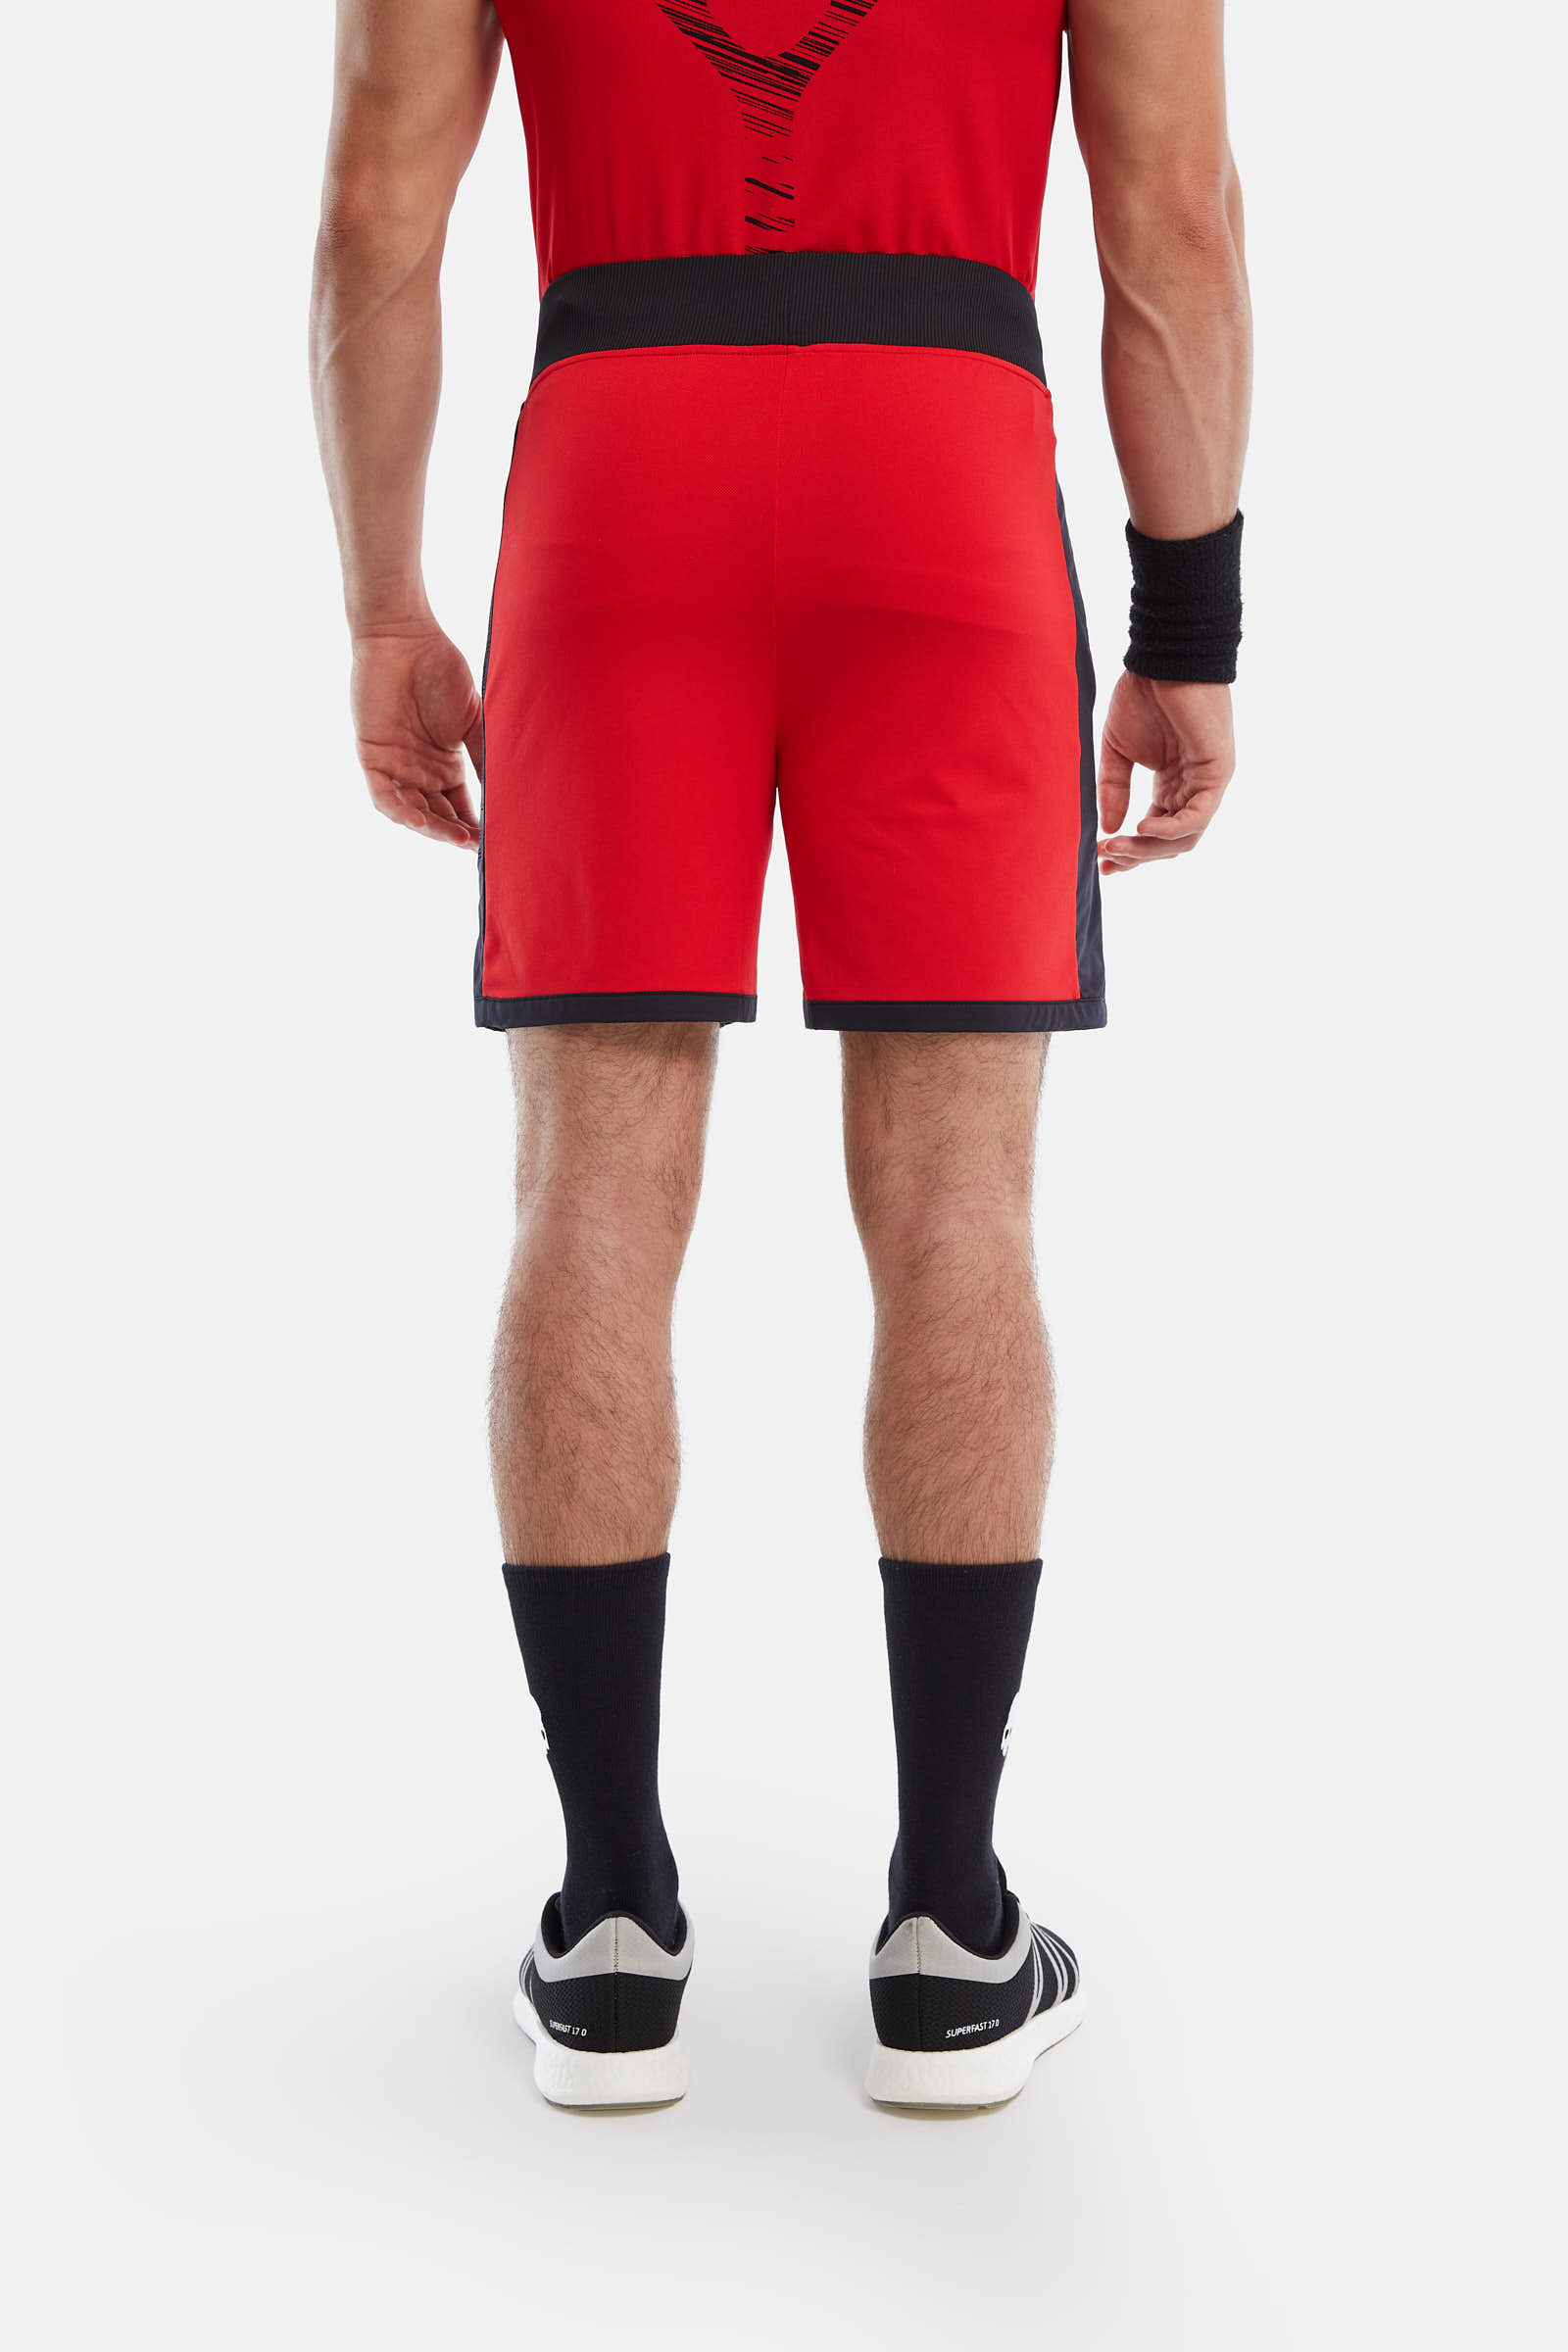 MESH TECH SHORTS - RED,BLACK - Hydrogen - Luxury Sportwear